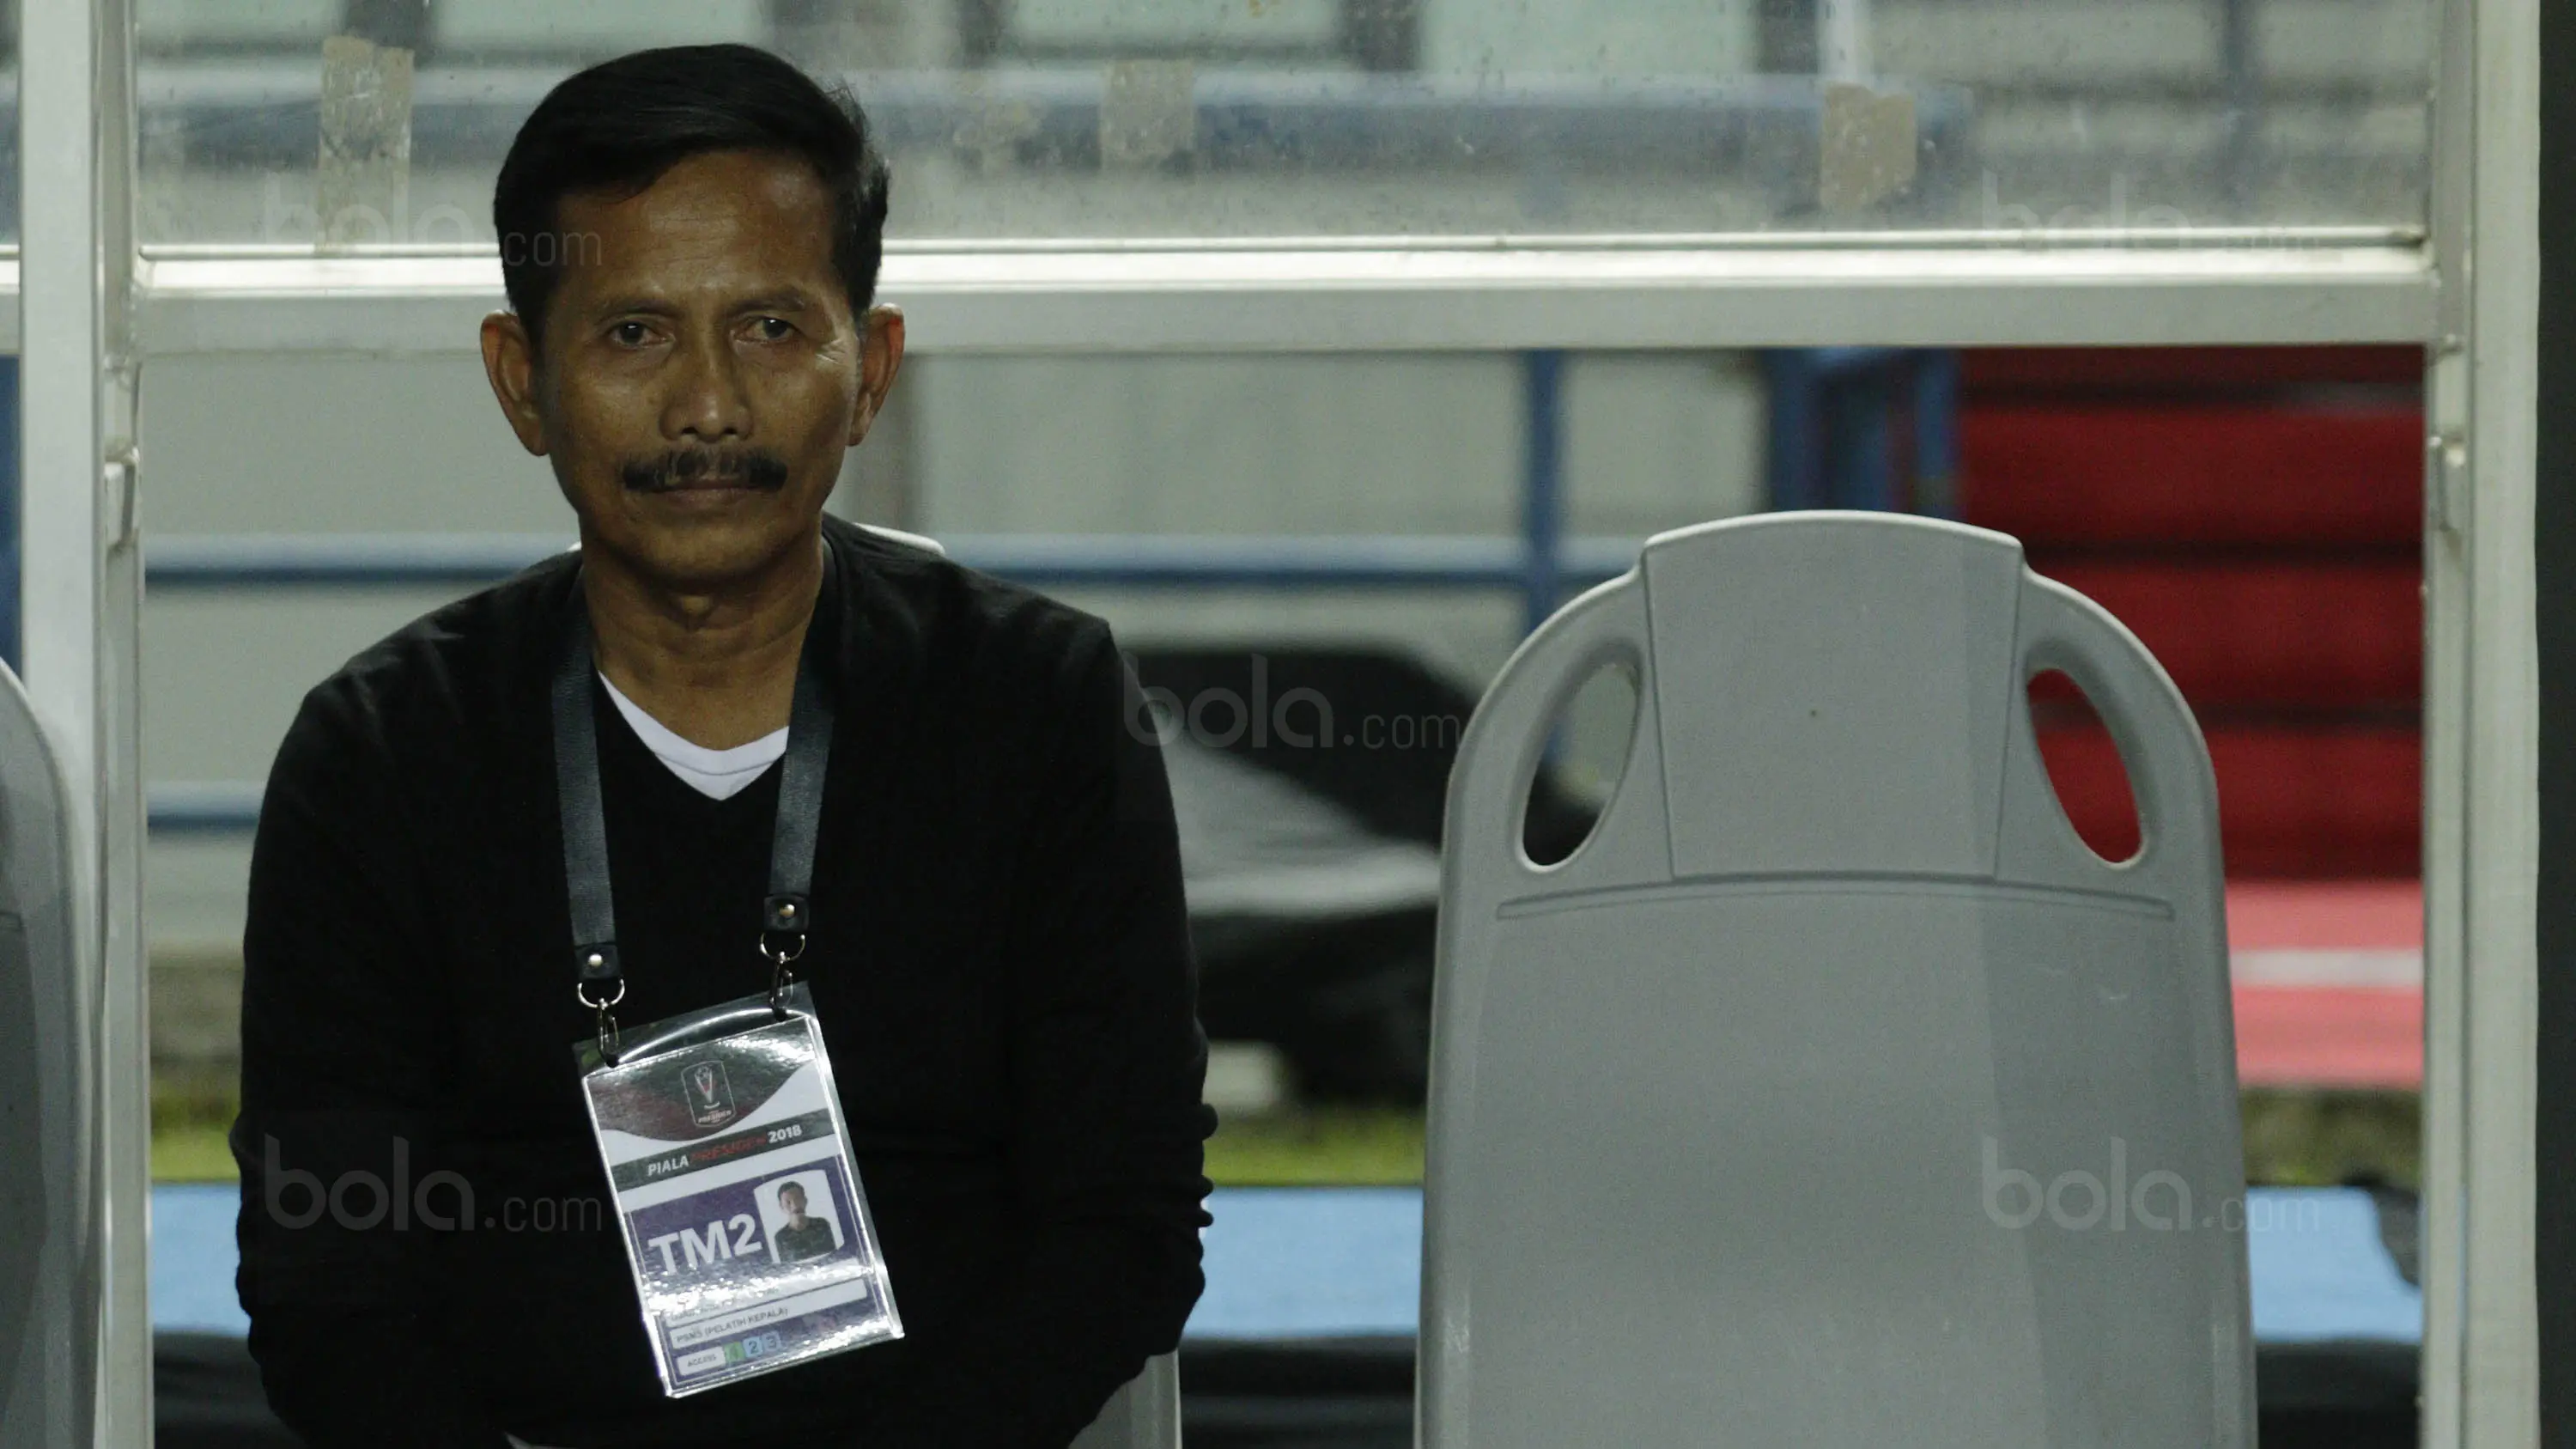 Pelatih PSMS Medan, Djadjang Nurdjaman, saat pertandingan melawan PSM Makassar pada laga Piala Presiden di Stadion GBLA, Bandung, Selasa (16/1/2018). PSMS Medan menang 2-1 atas PSM Makassar. (Bola.com/M Iqbal Ichsan)